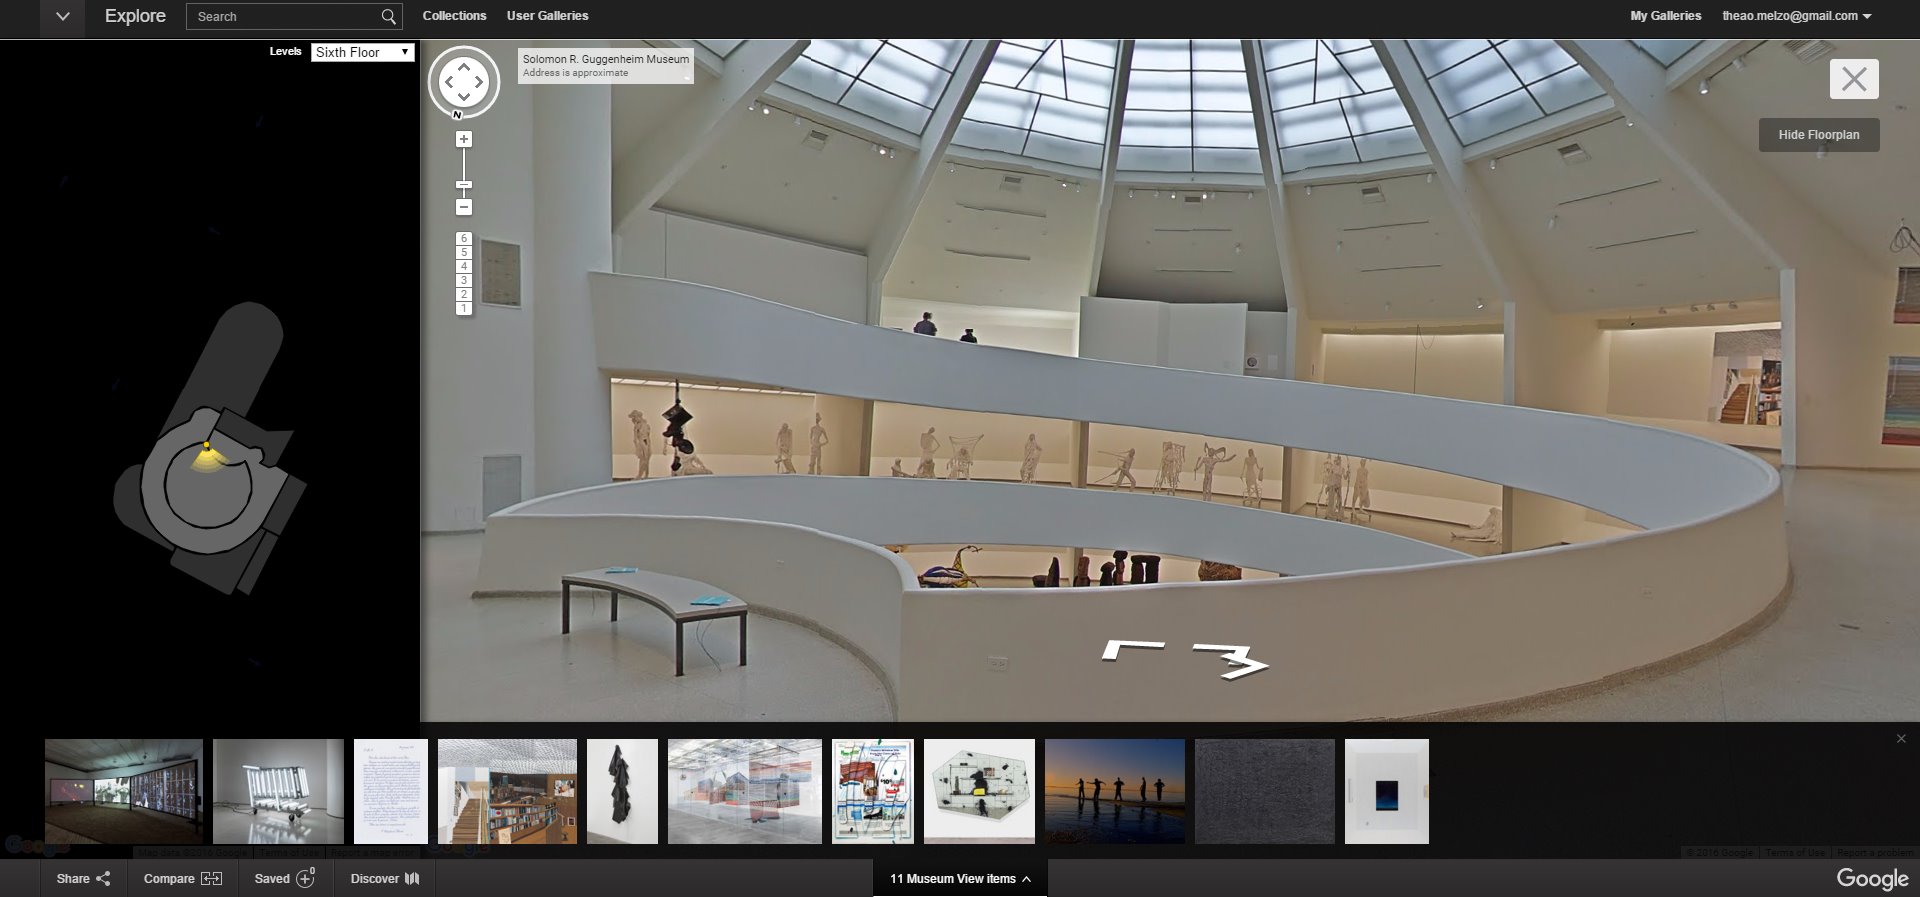 Una visita al Guggenheim di New York con Google Street View